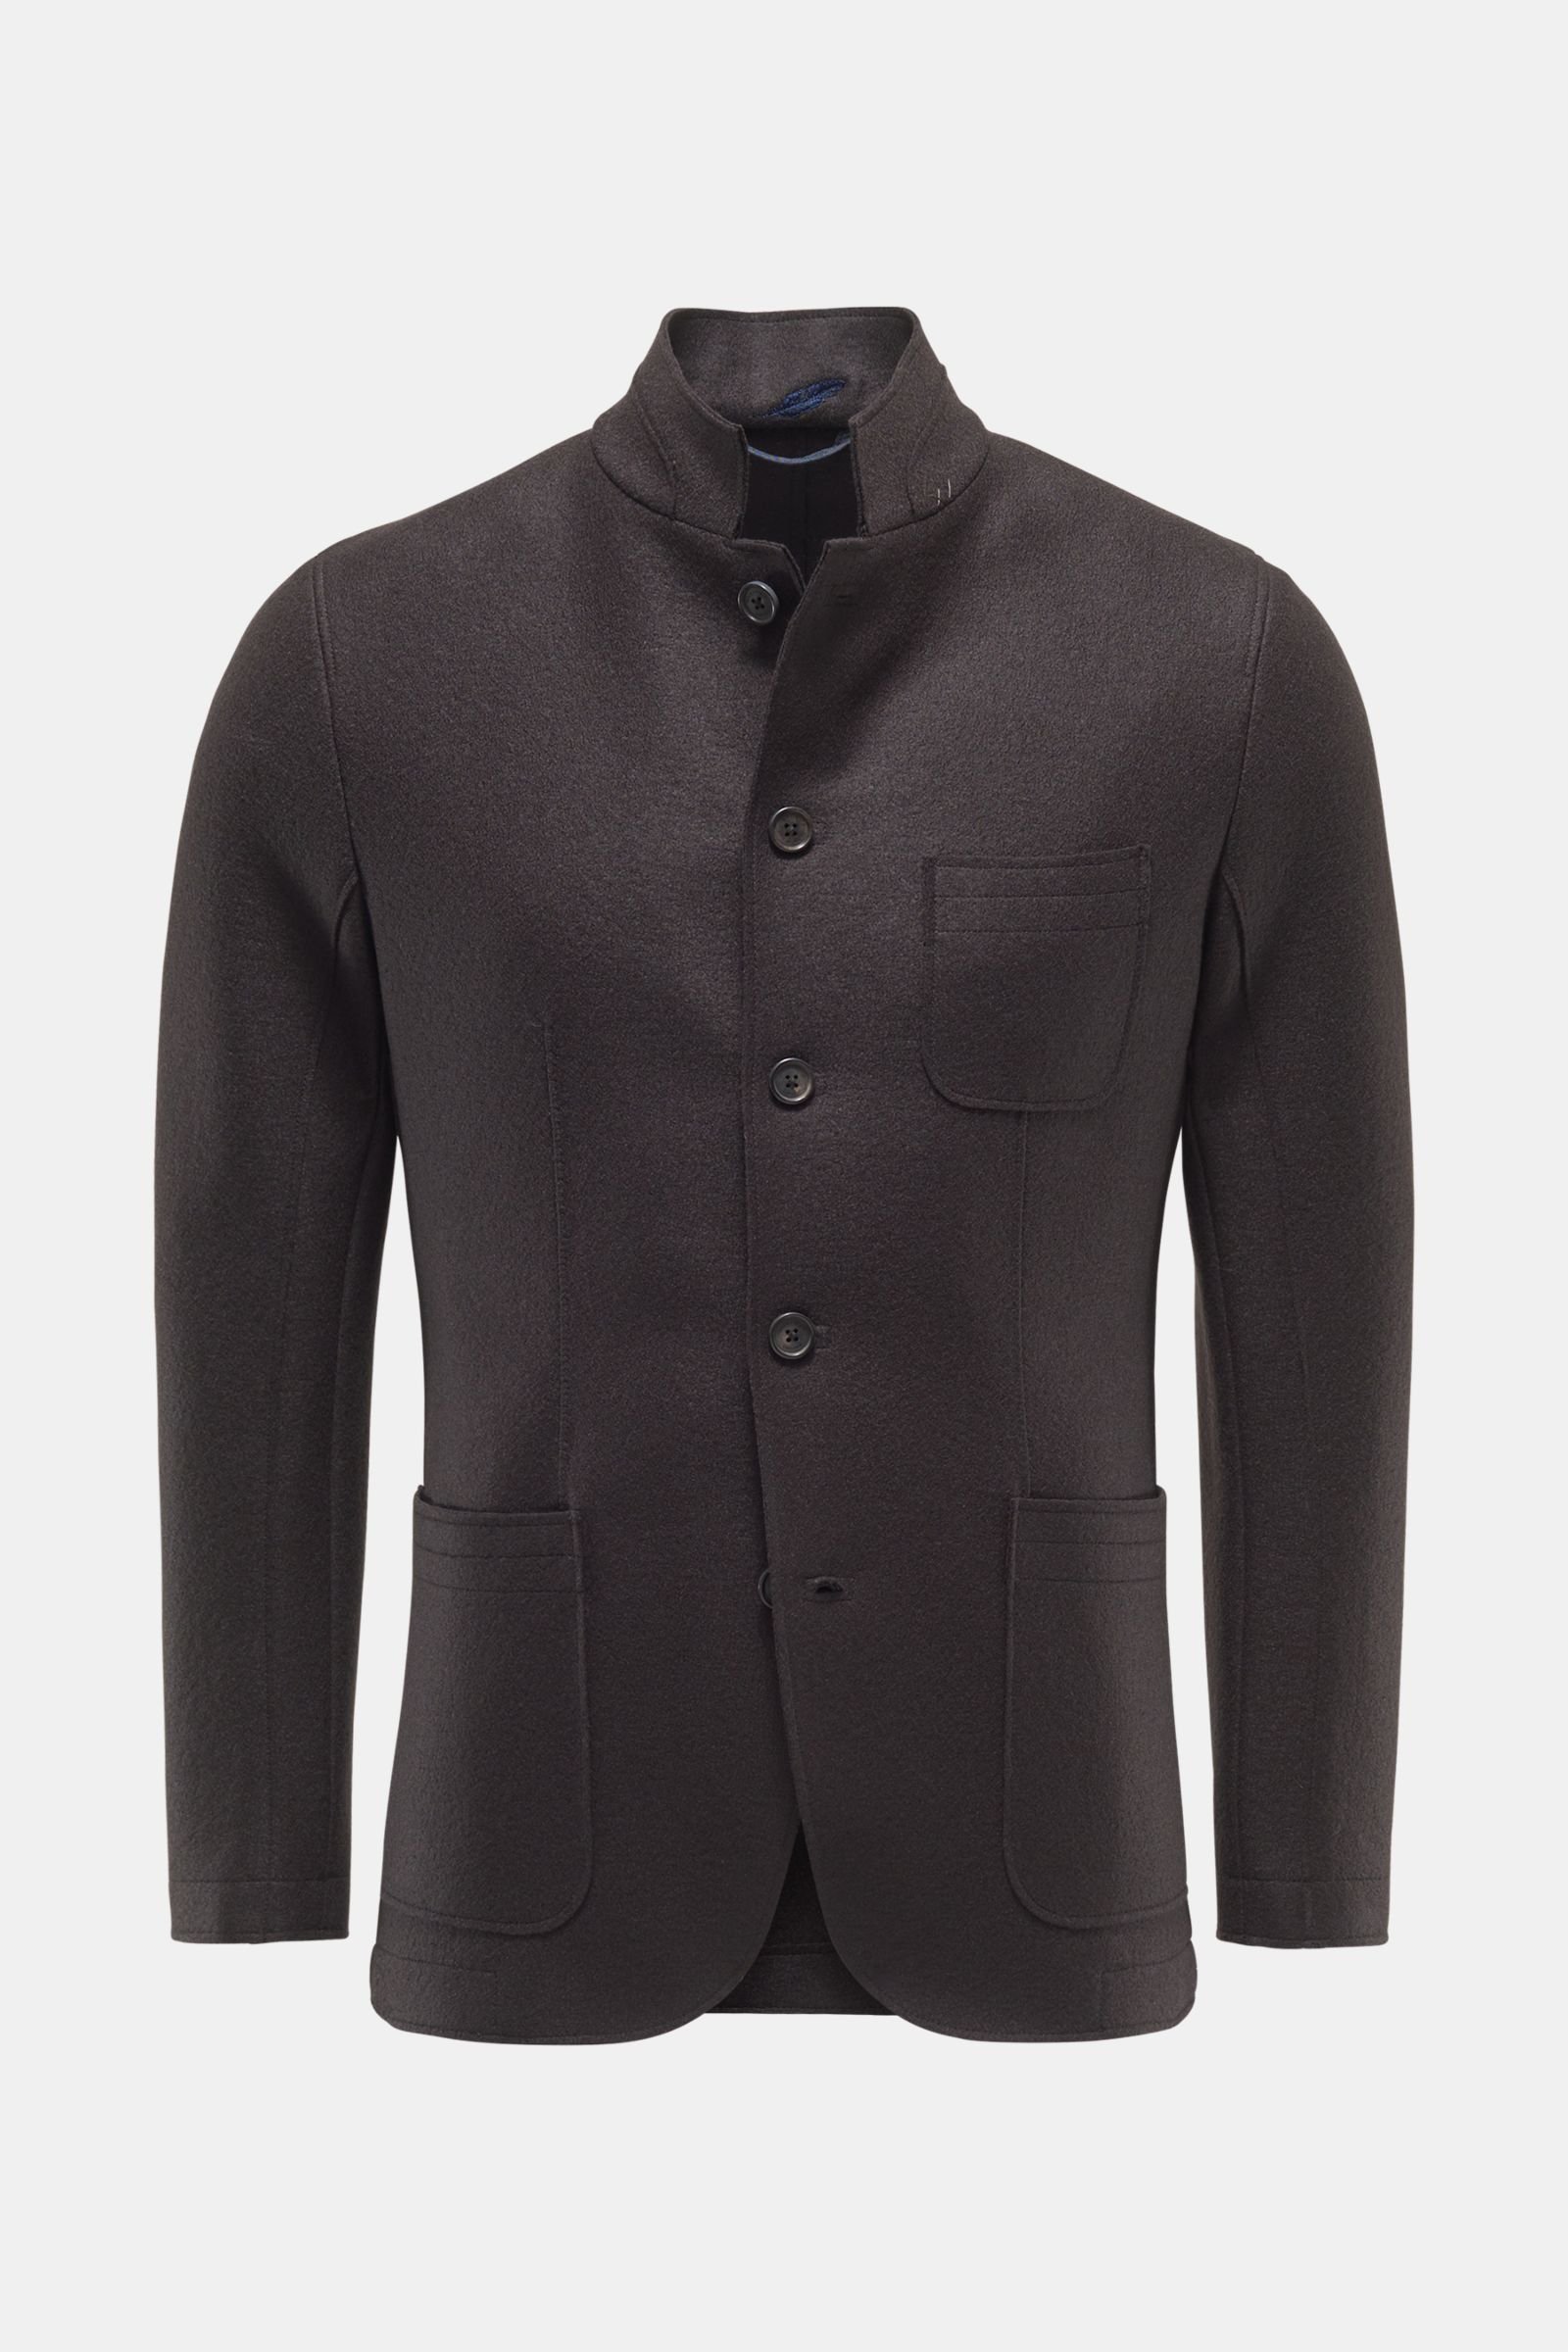 Smart-casual jacket 'Travel Blazer' dark brown